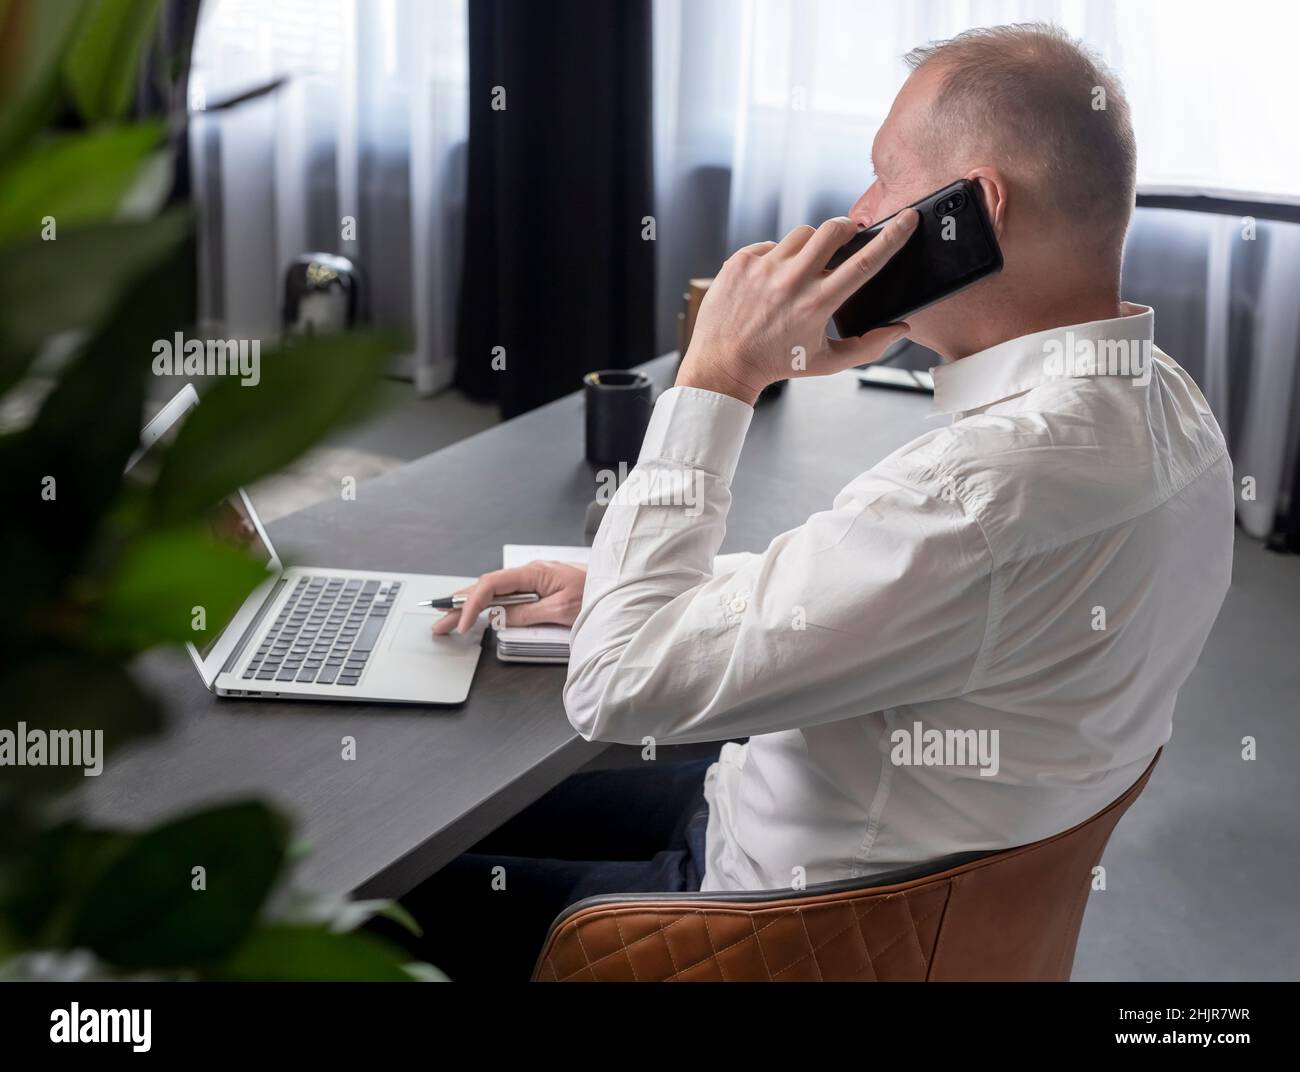 Homme d'affaires mature assis à une table au bureau, parlant sur un téléphone portable tout en regardant l'écran d'un ordinateur portable et en prenant des notes dans un ordinateur portable.Concept d'appel professionnel.Photo de haute qualité Banque D'Images